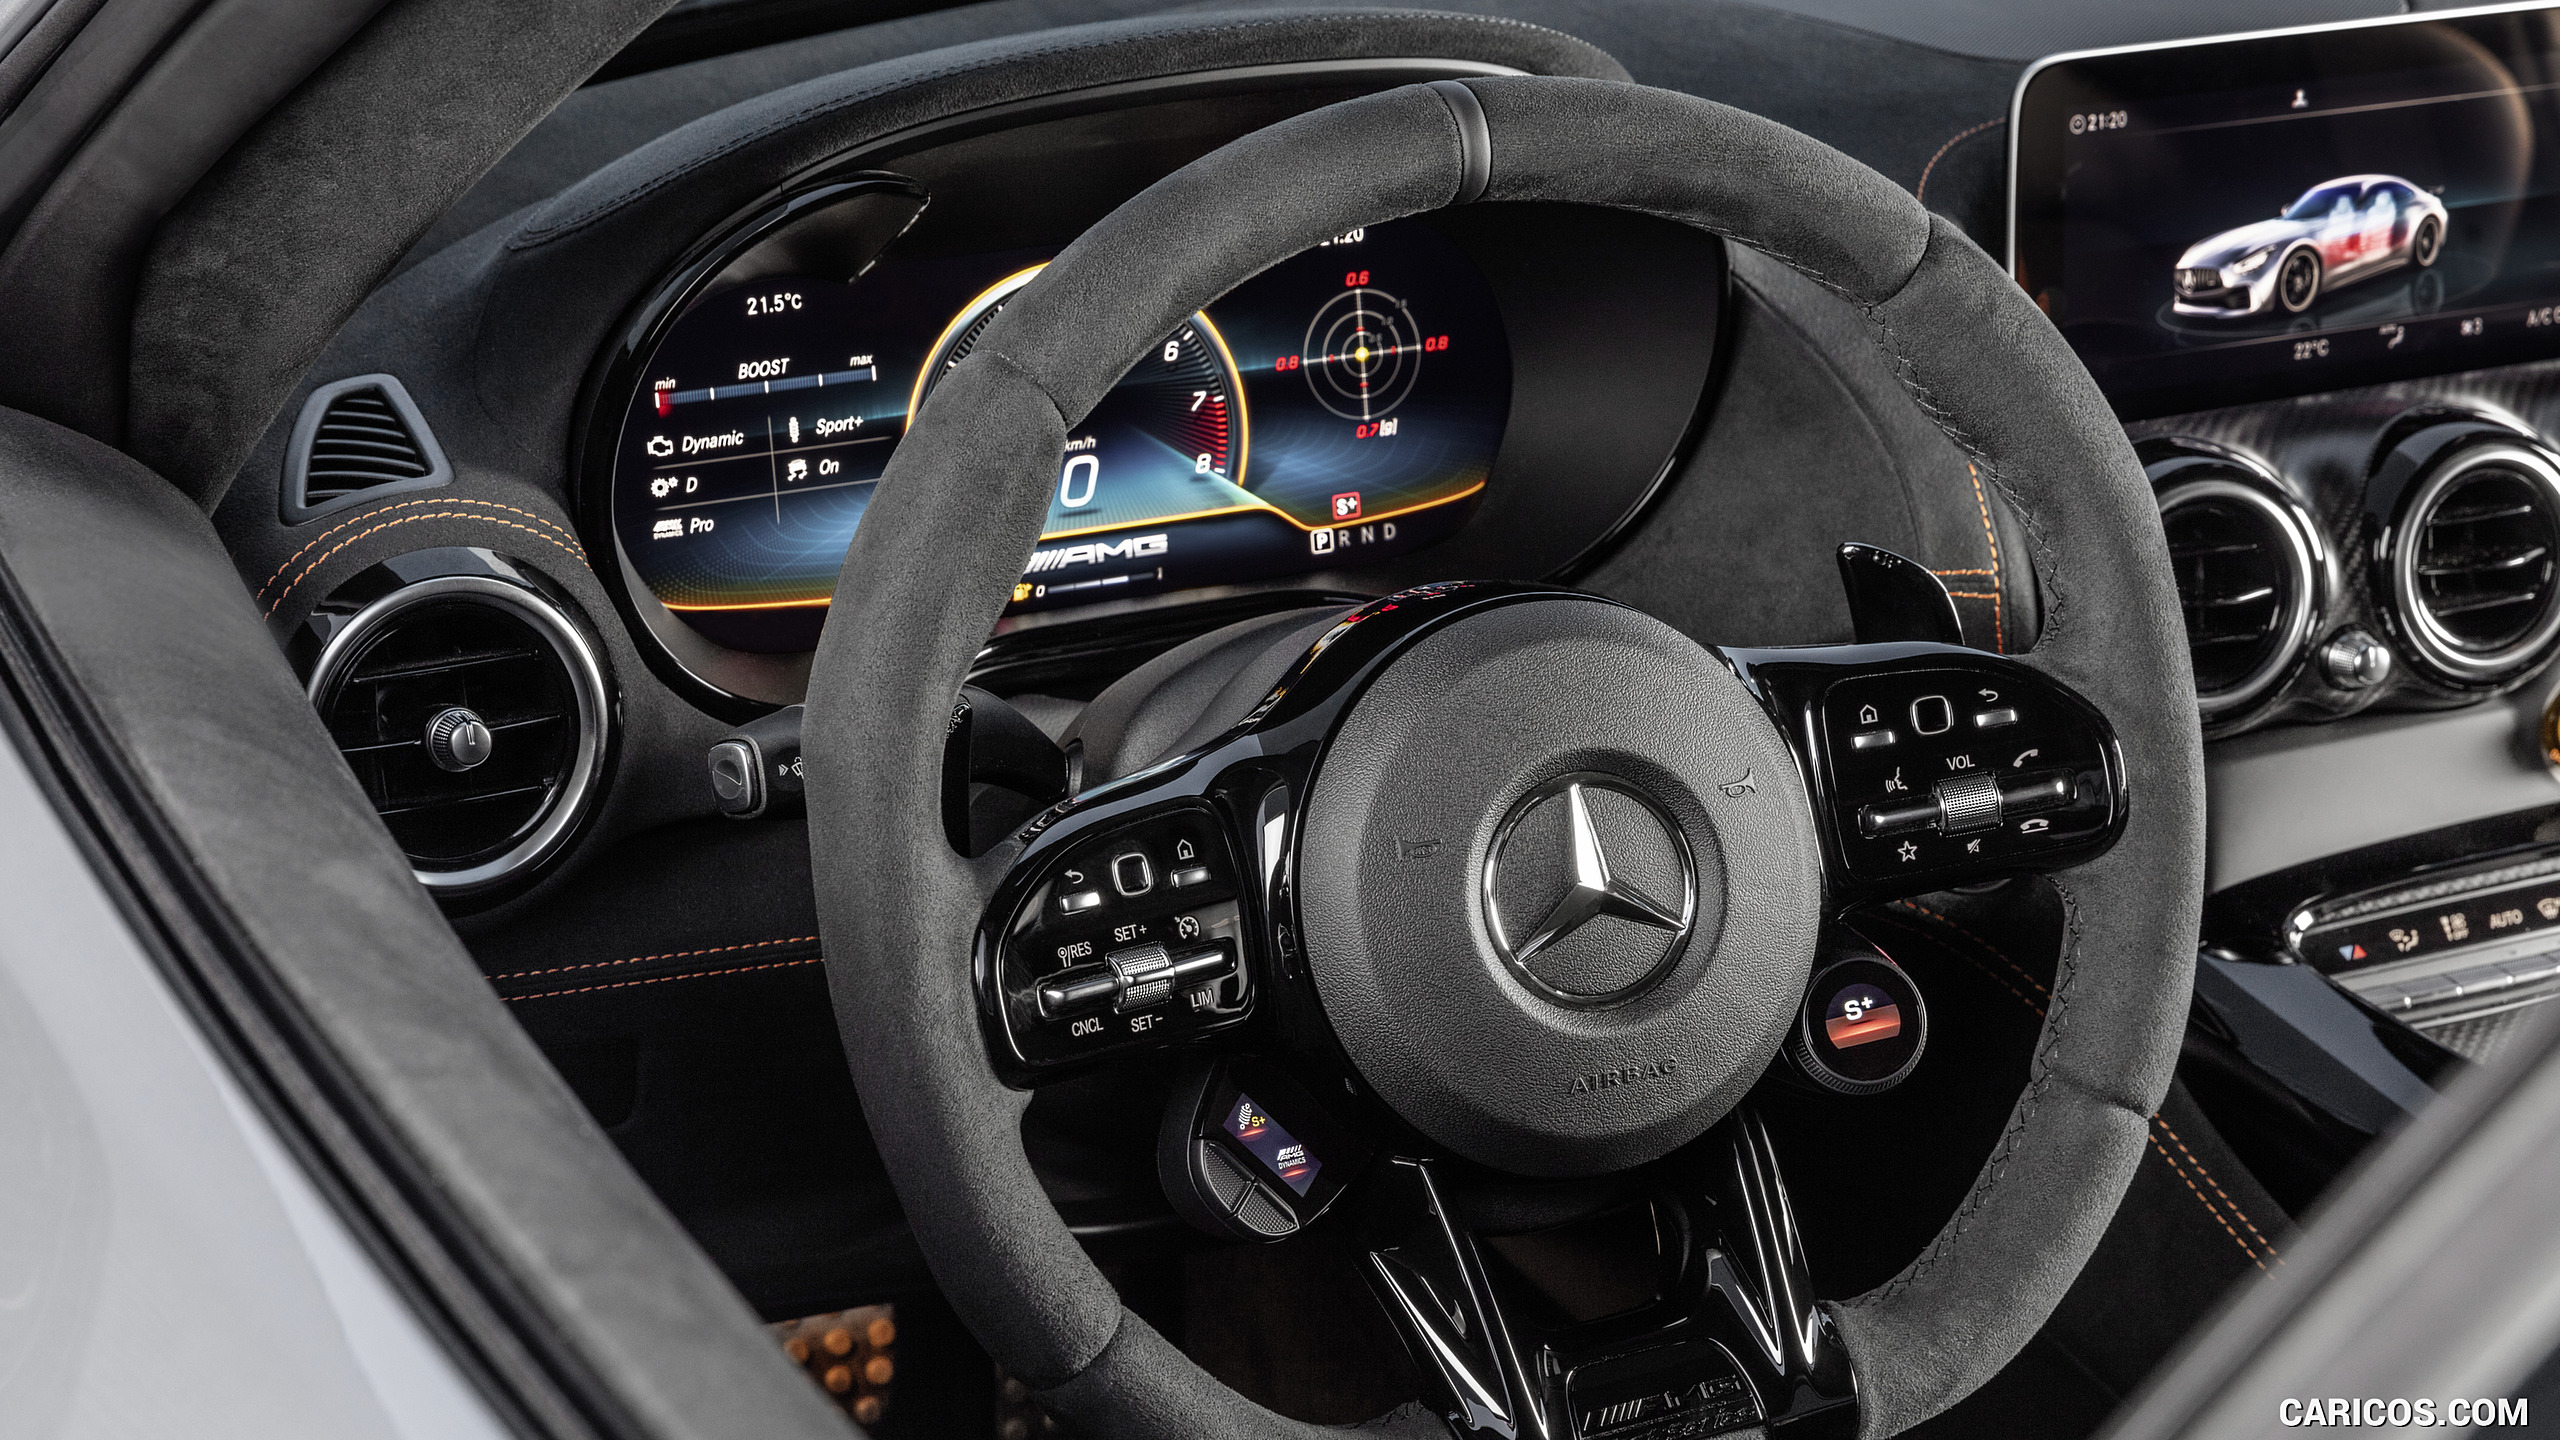 2021 Mercedes-AMG GT Black Series - Interior, Steering Wheel, #85 of 215